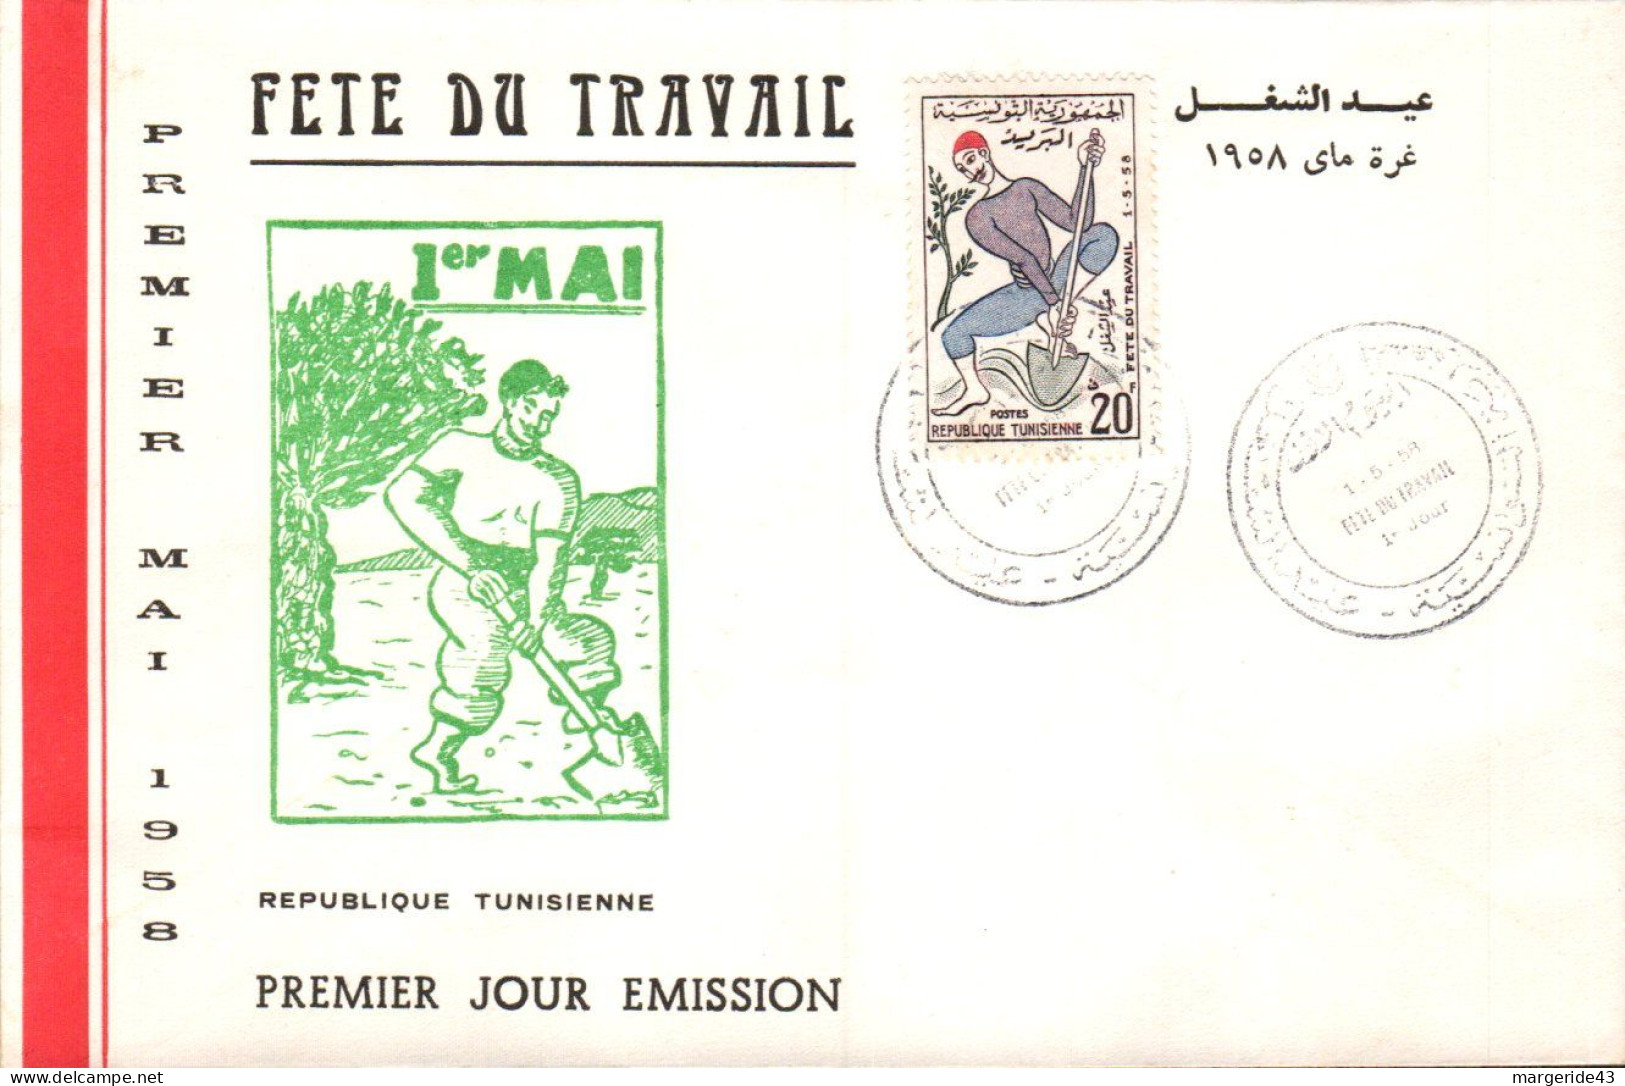 TUNISIE FDC 1958 FETE DU TRAVAIL - Tunisie (1956-...)